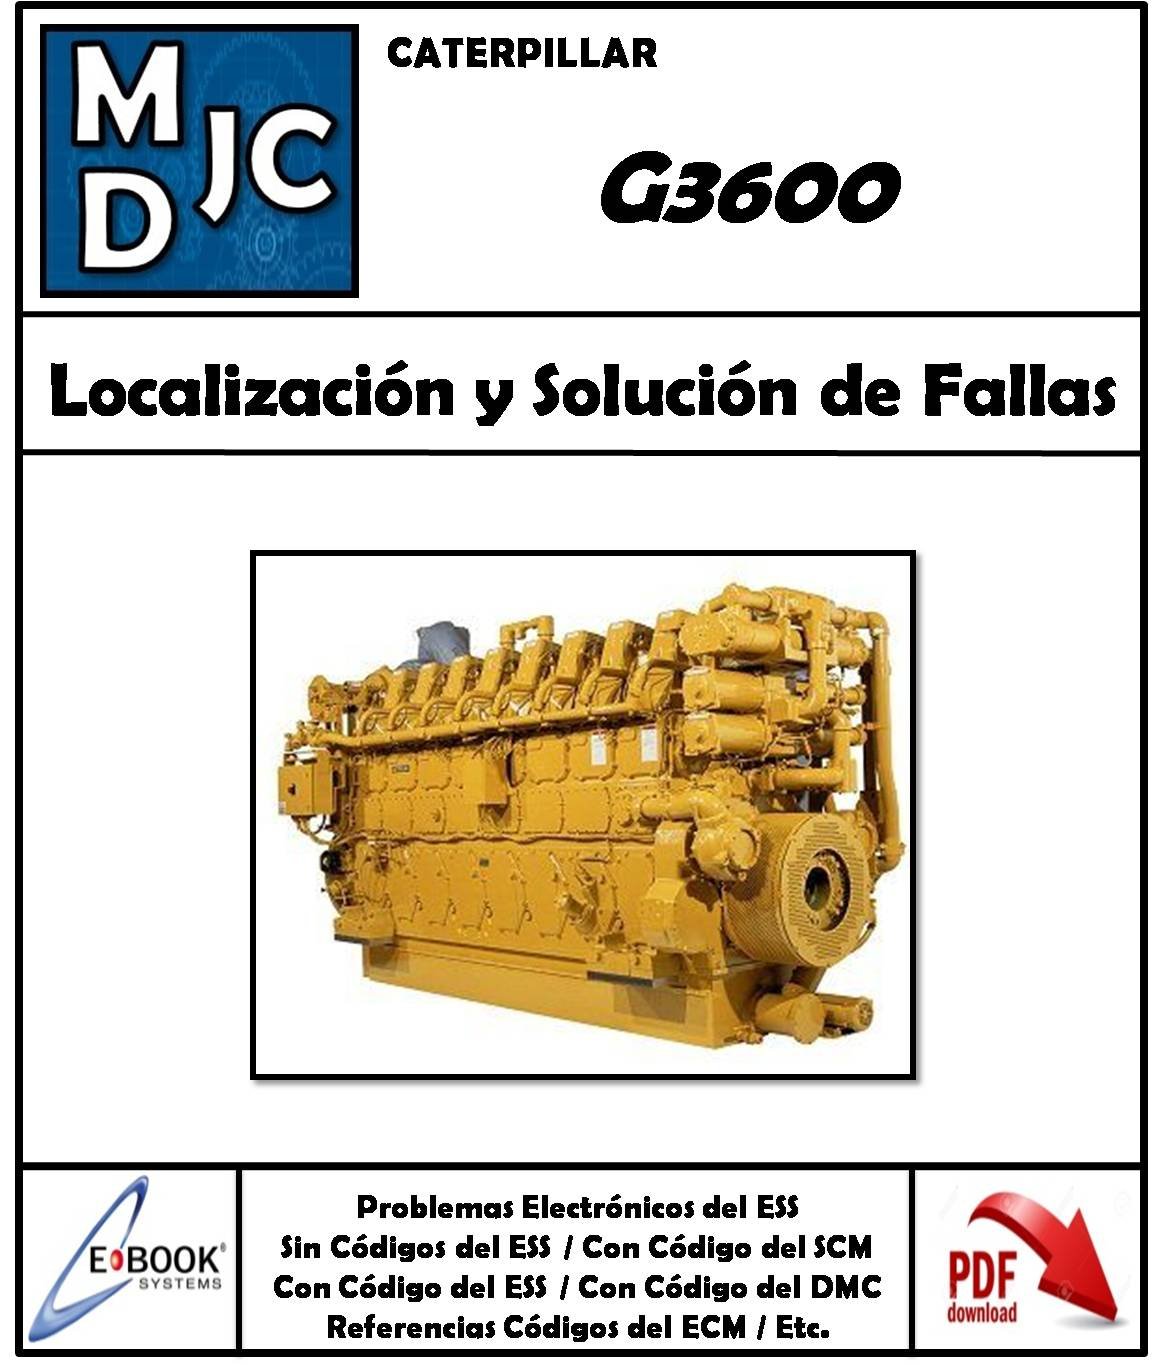 Manual de Taller ( Localización y Solución de Fallas ) Motor Caterpillar G3600